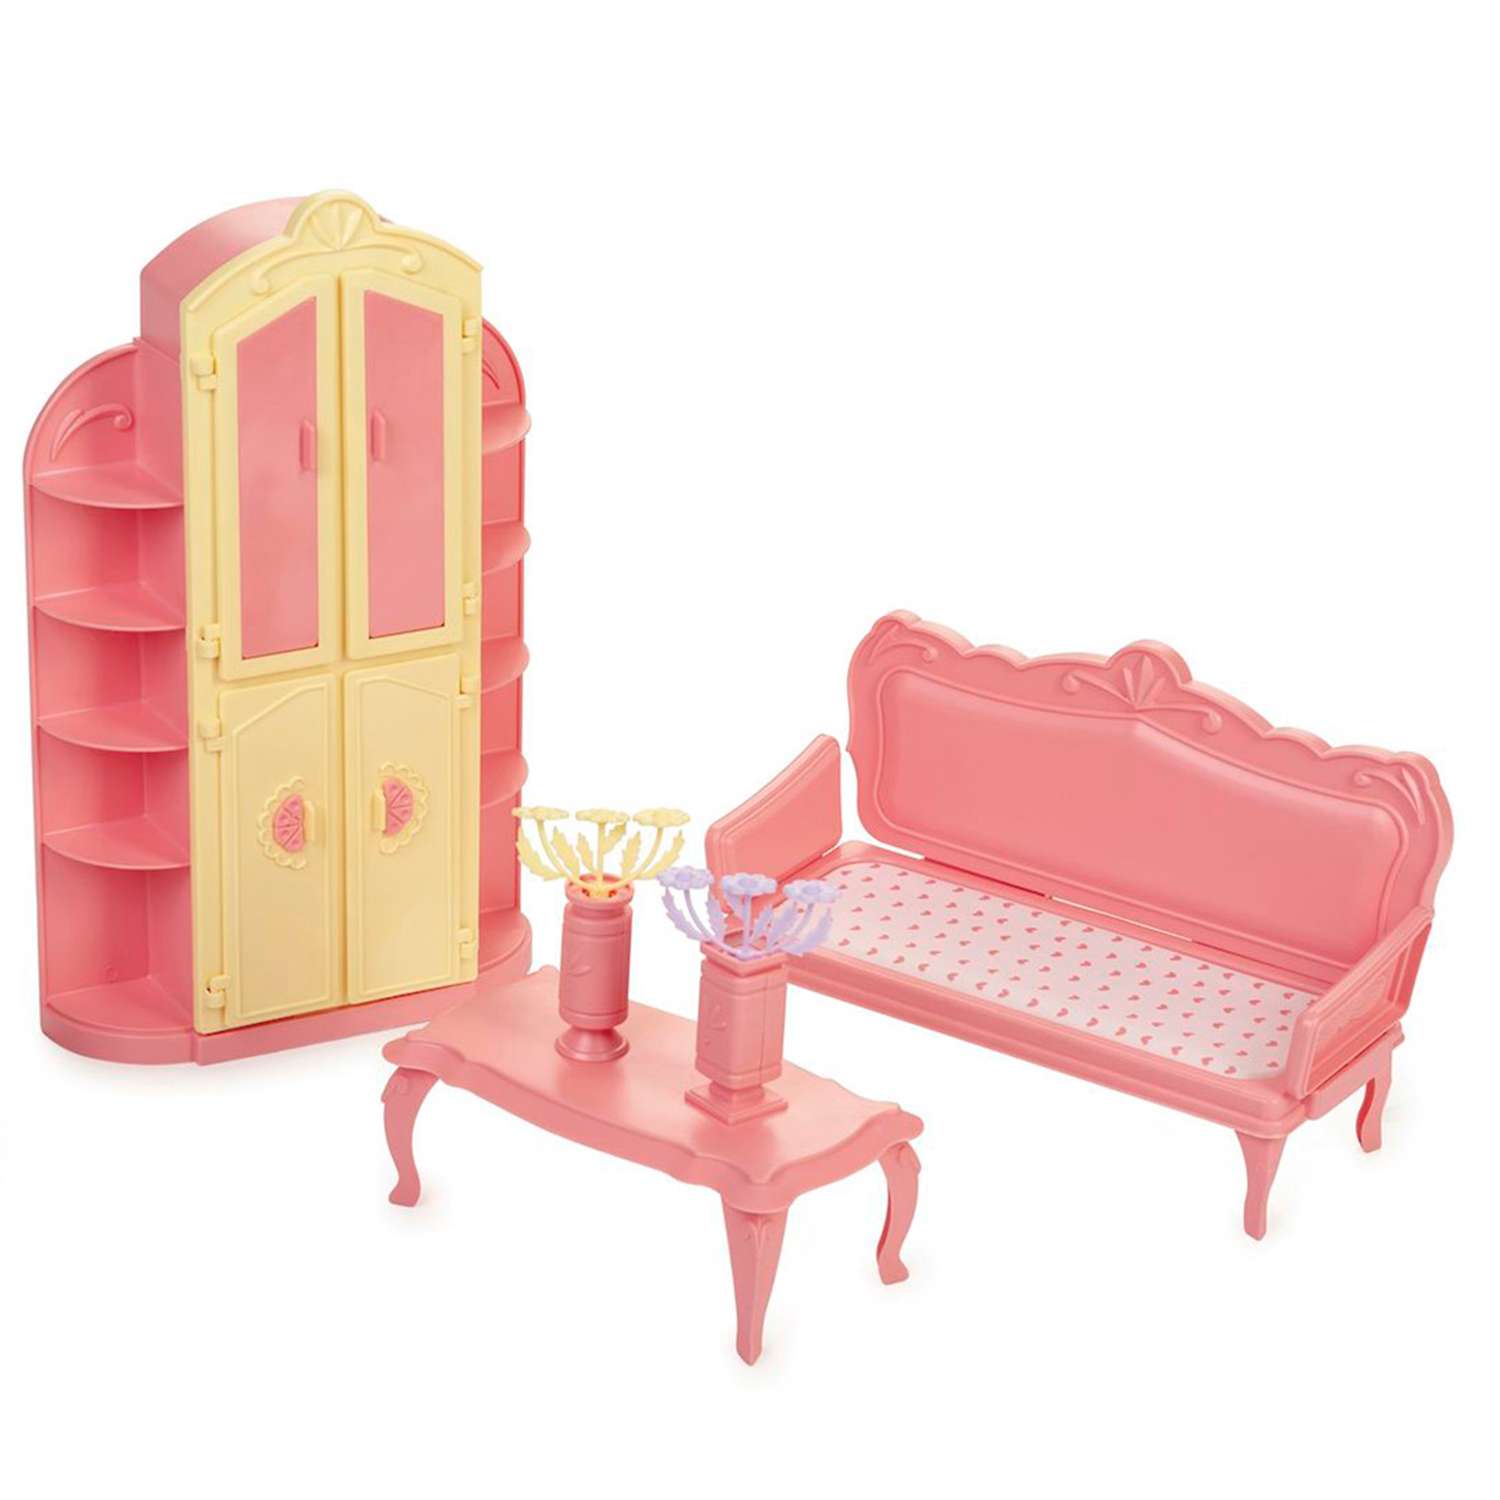 Огонёк мебель для кукол маленькая принцесса